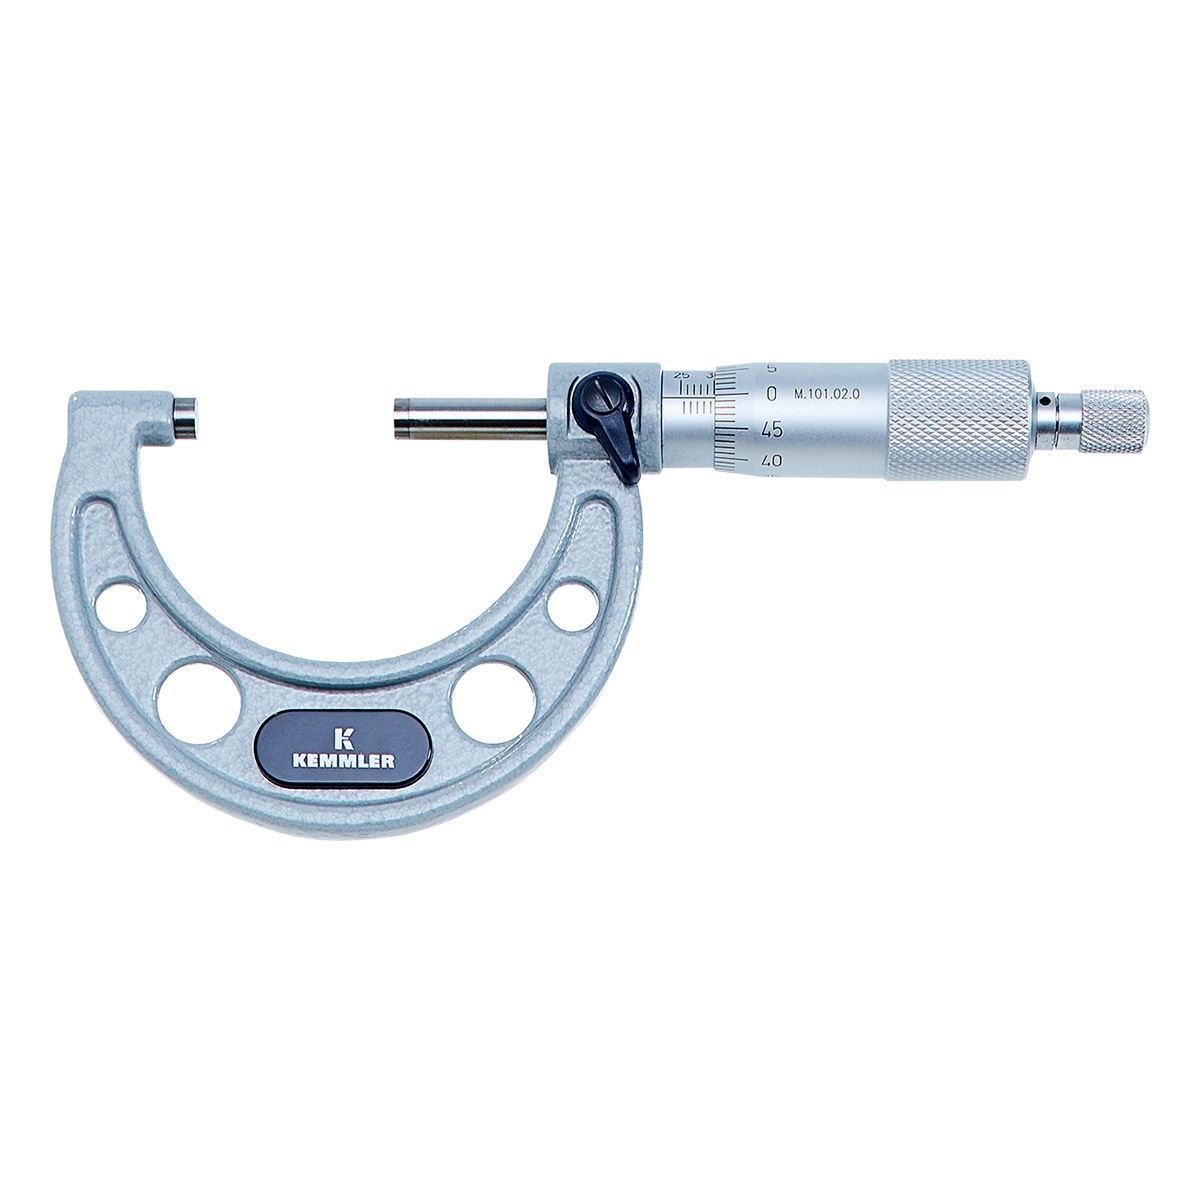 Mikrometer Bügelmessschraube 175-200mm Ablesung 0,01mm Analog Messschraube 